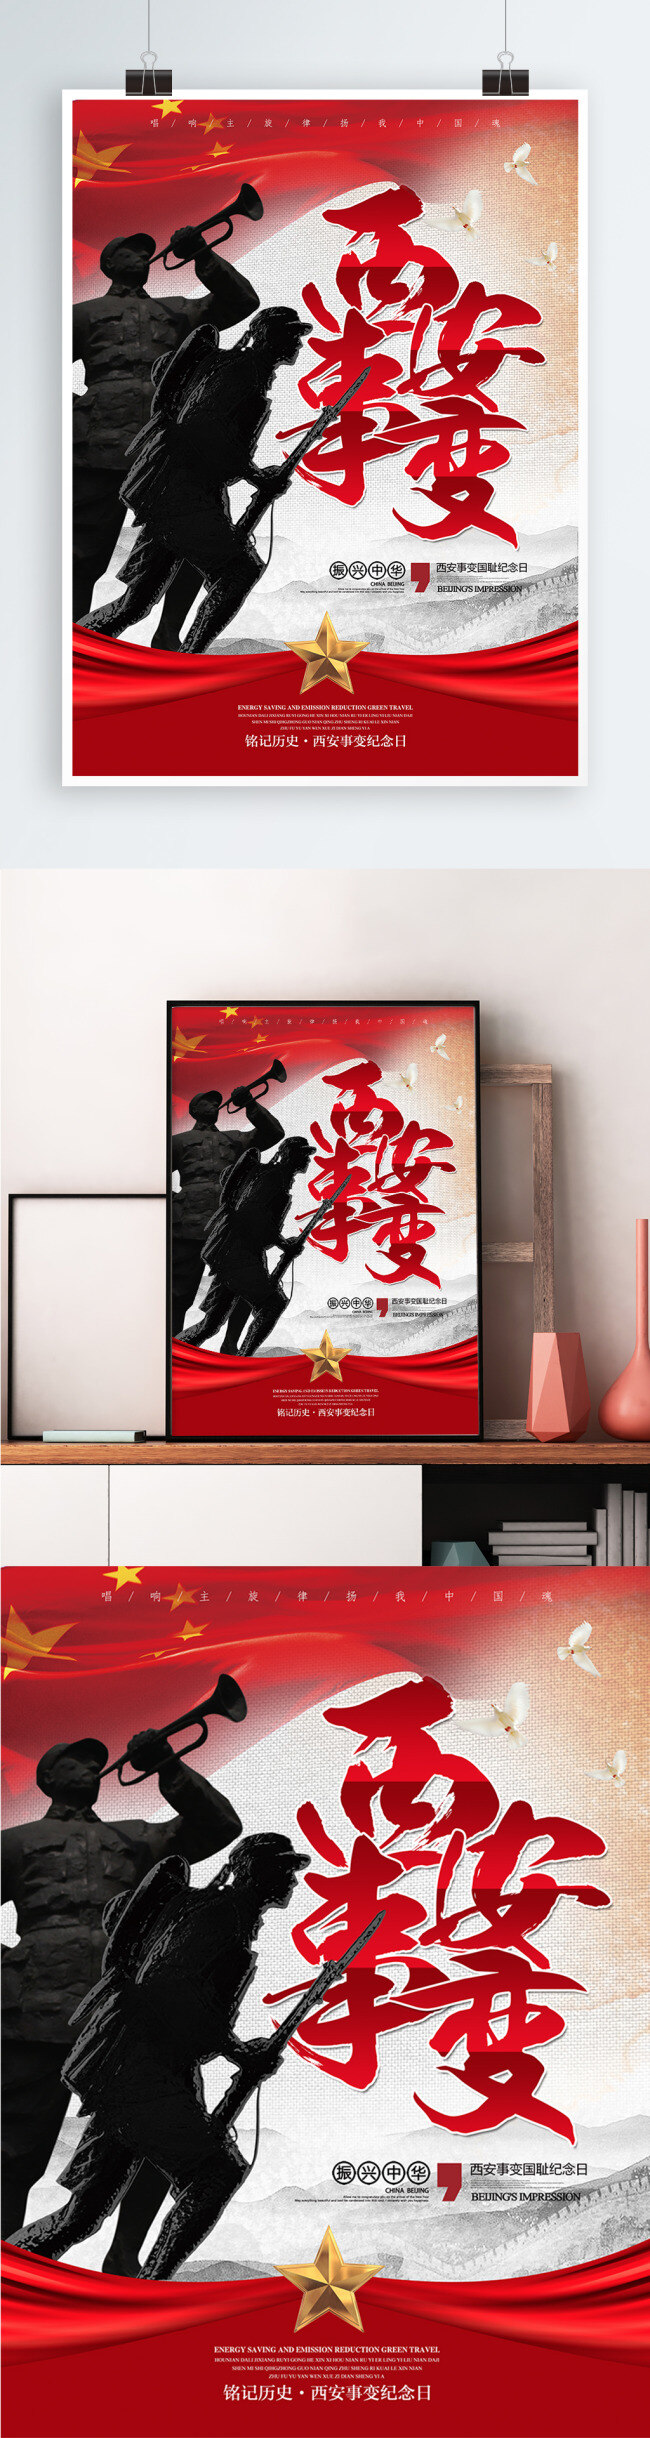 中国 风 西安事变 纪念日 公益 宣传海报 展板 中国风 抗战 抗日 战争 红军 解放军 党建 宣传 海报